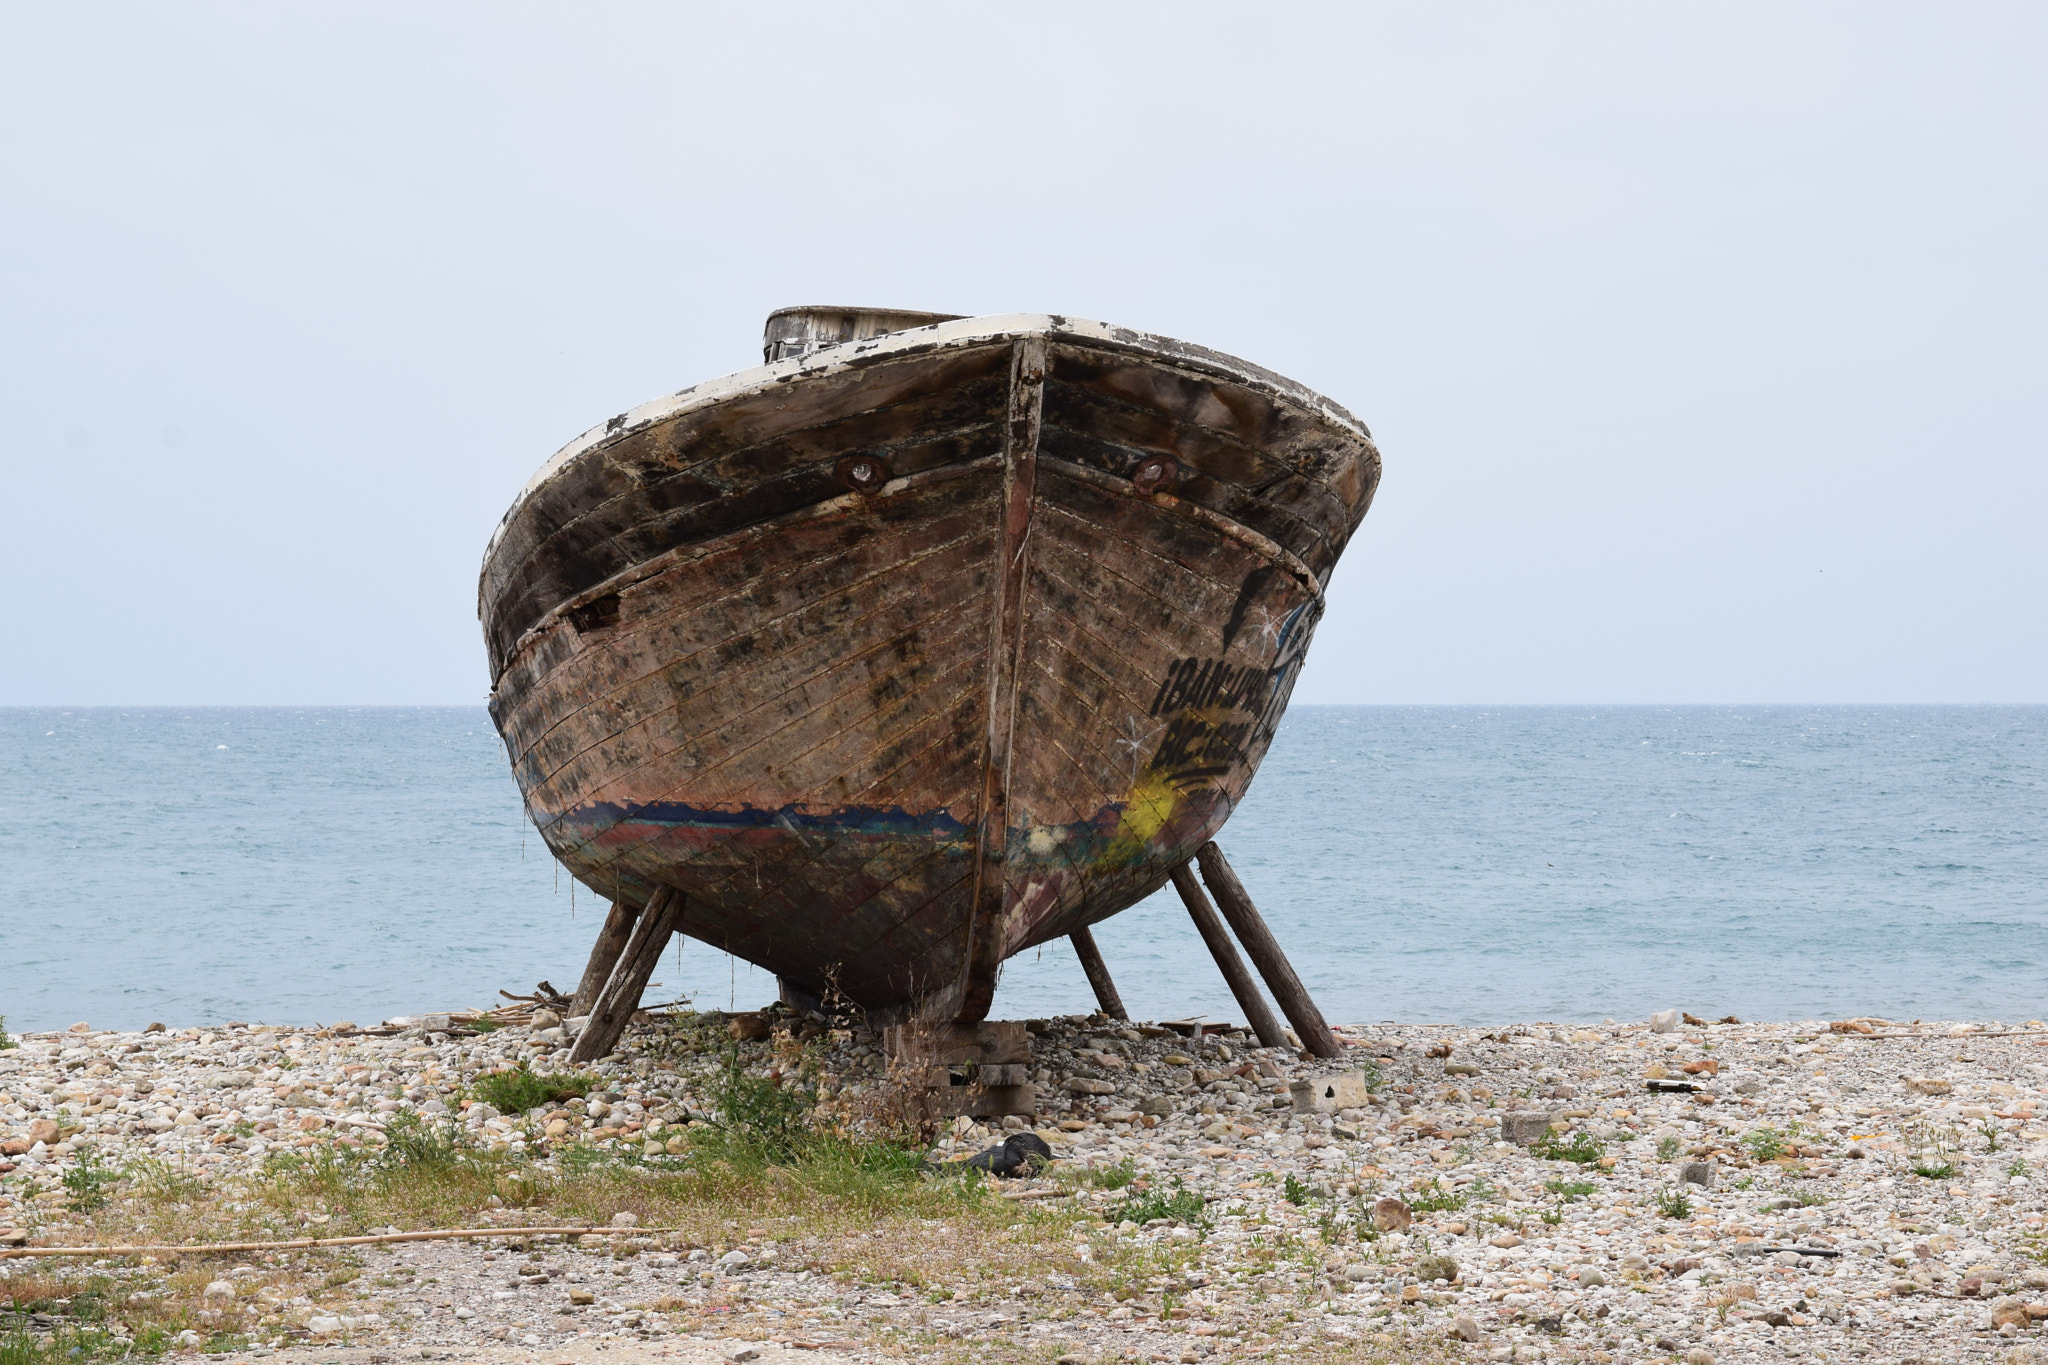 Nikon D3300 + Sigma 17-70mm F2.8-4 DC Macro OS HSM | C sample photo. Abandoned boat at patras photography